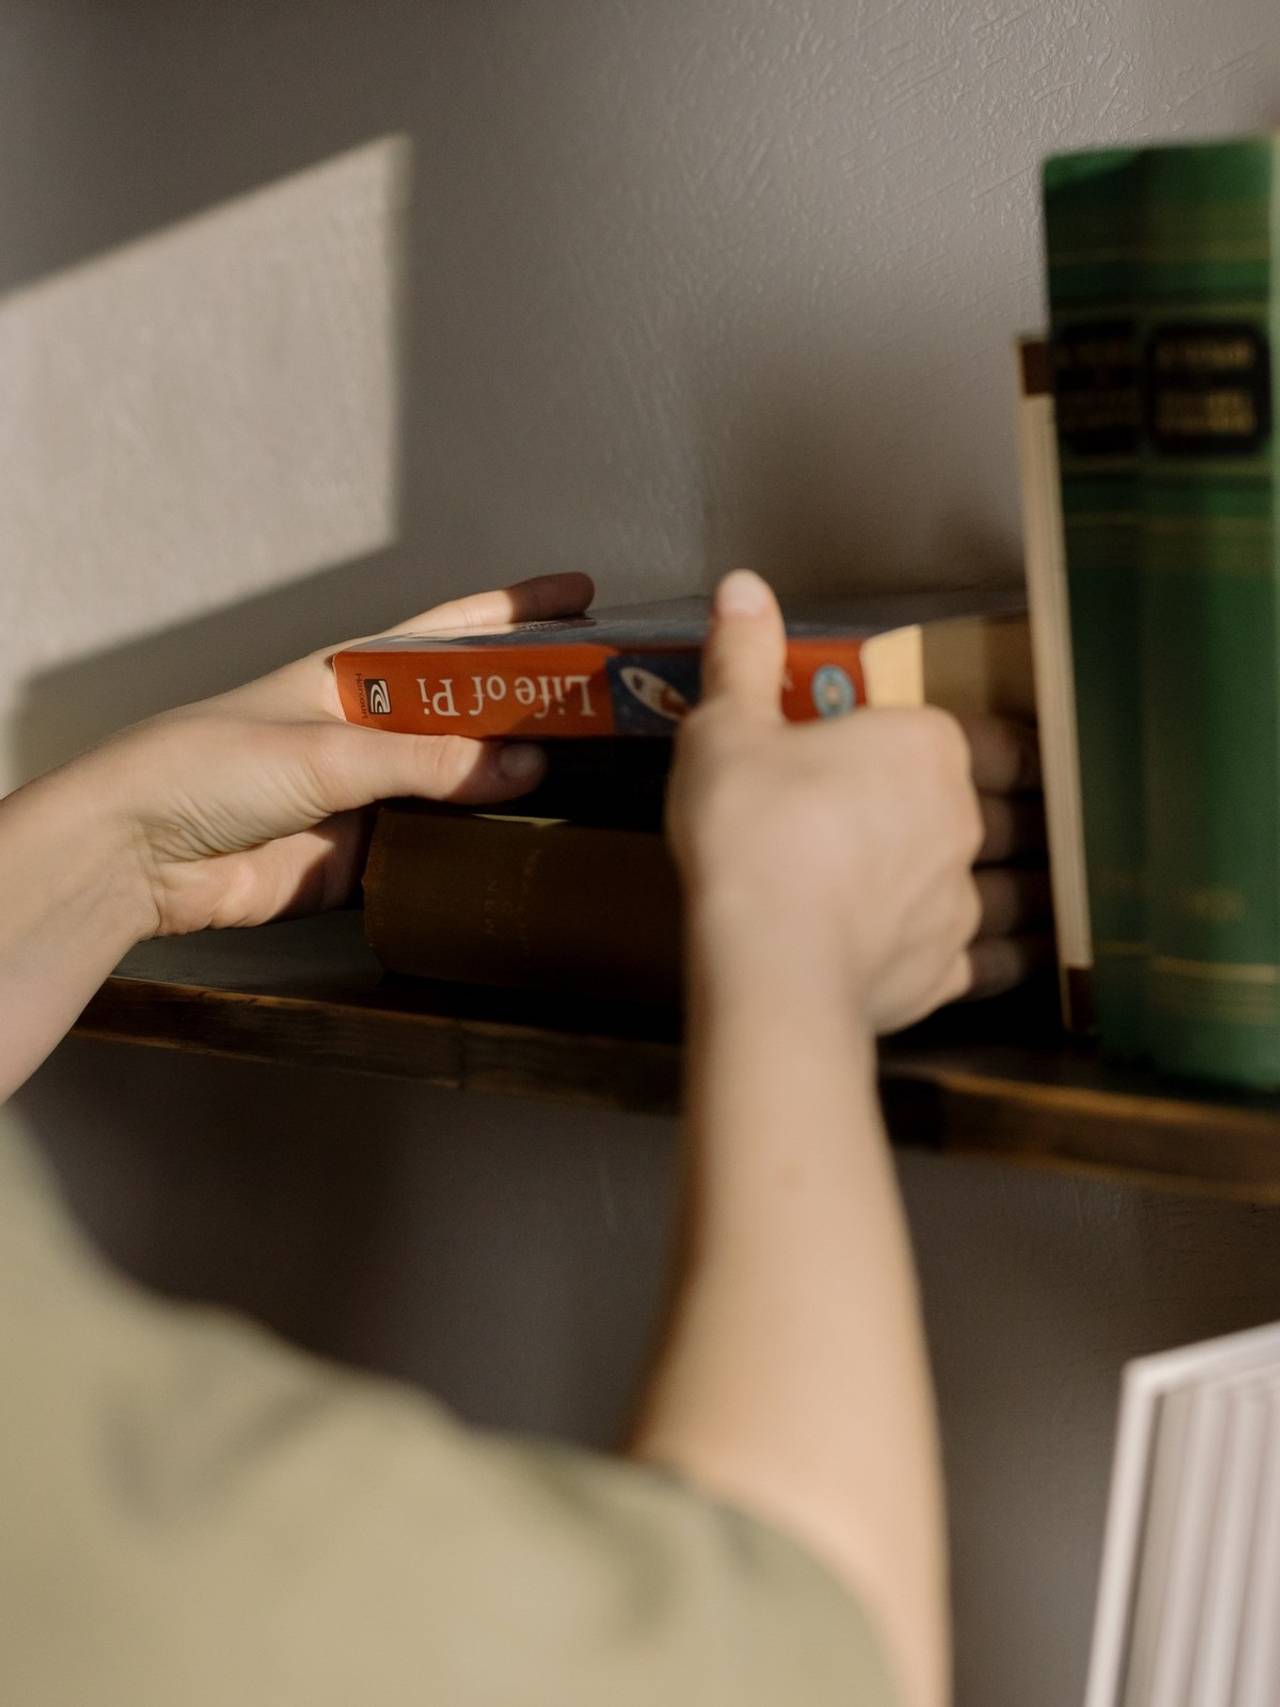 Mãos segurando livro e colocando ele na horizontal em uma pilha de livros